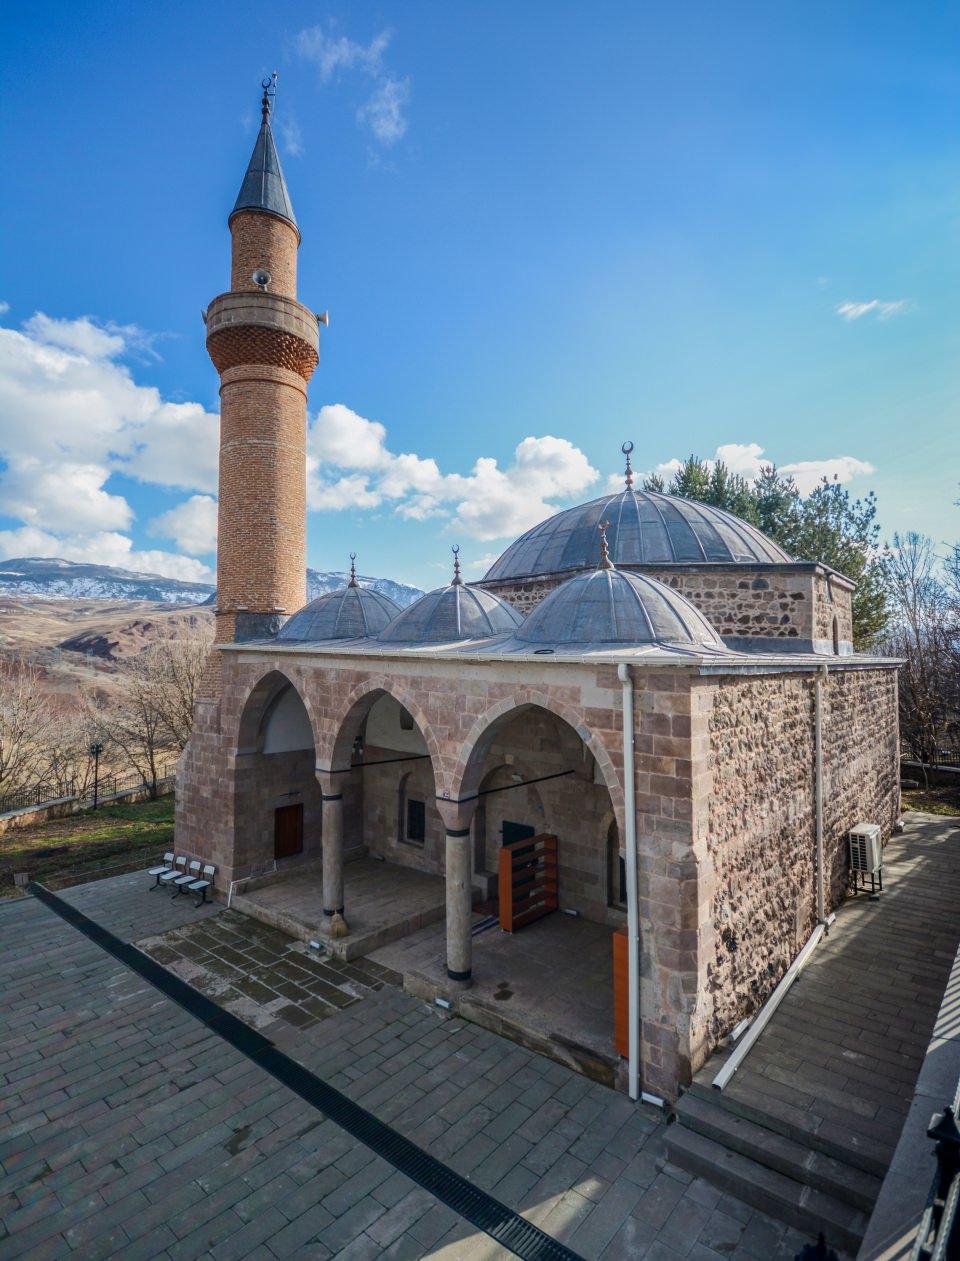 <p>Restorasyon çalışması yapılan camiler arasında Şebinkarahisar ilçesindeki 835 yıllık Behramşah, 158 yıllık Hacı Hüseyin, 130 yıllık Hacı Miktad ve 123 yıllık Kapu camileri gibi yapılar yer alıyor.</p>

<p> </p>
